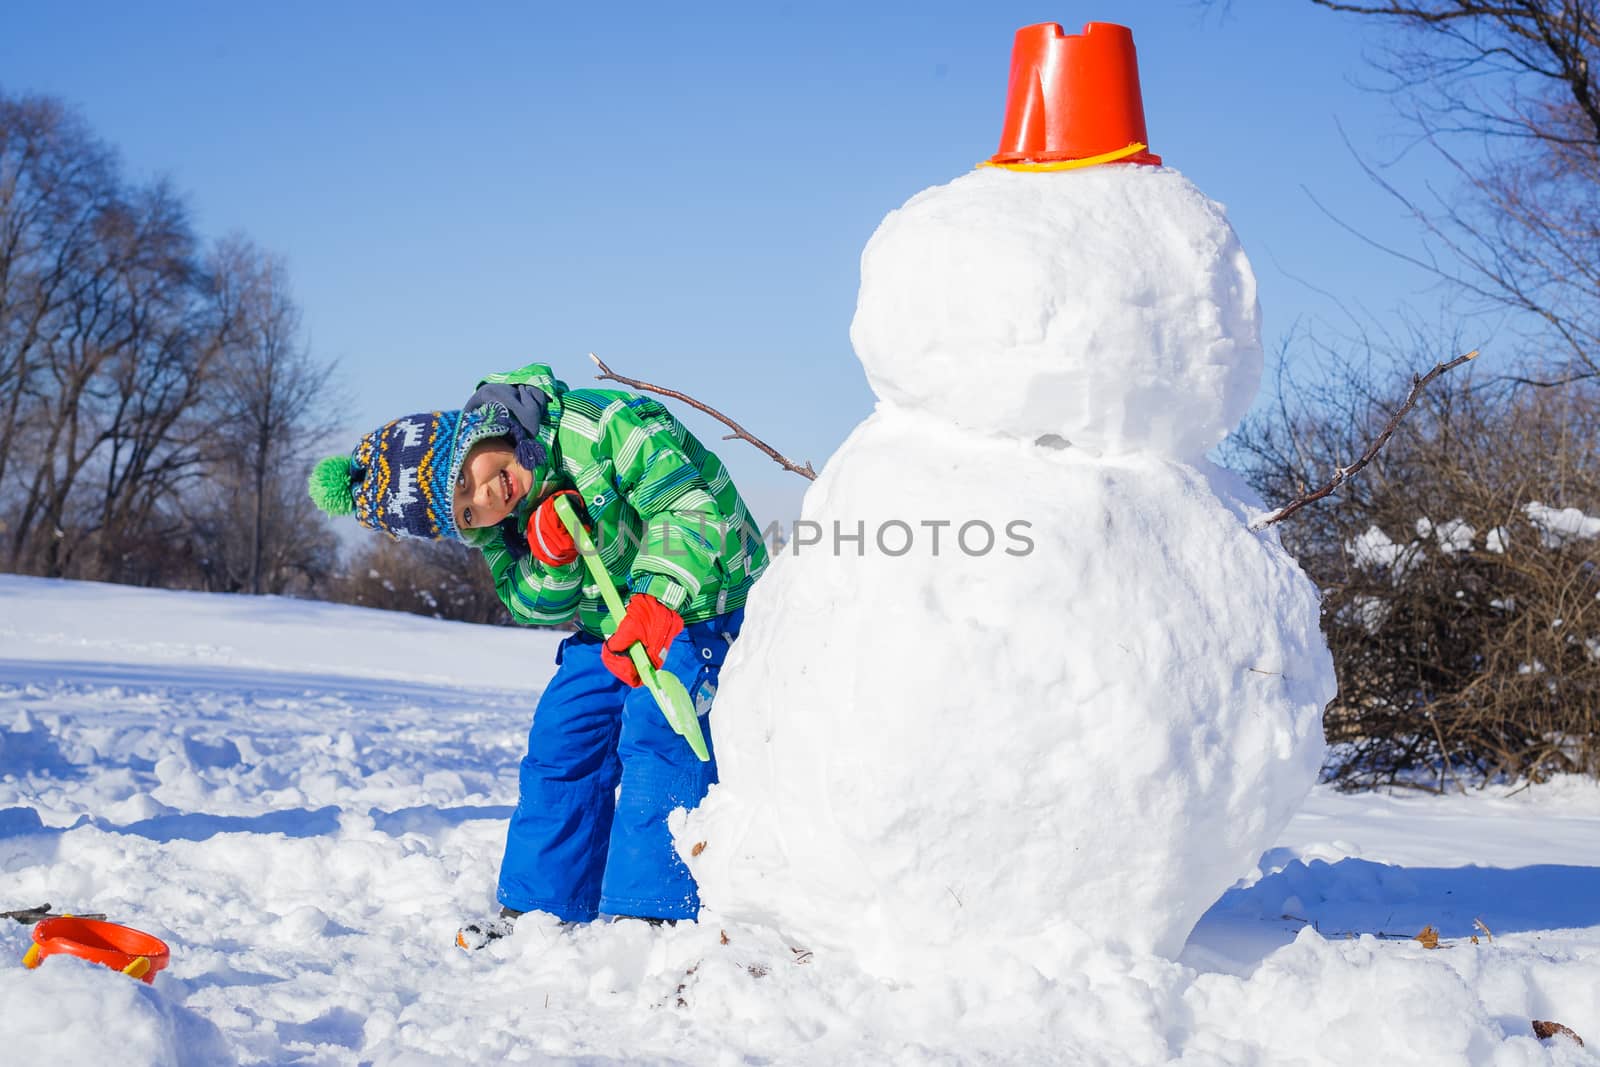 Winter, play, fun - Little boy making a snowman